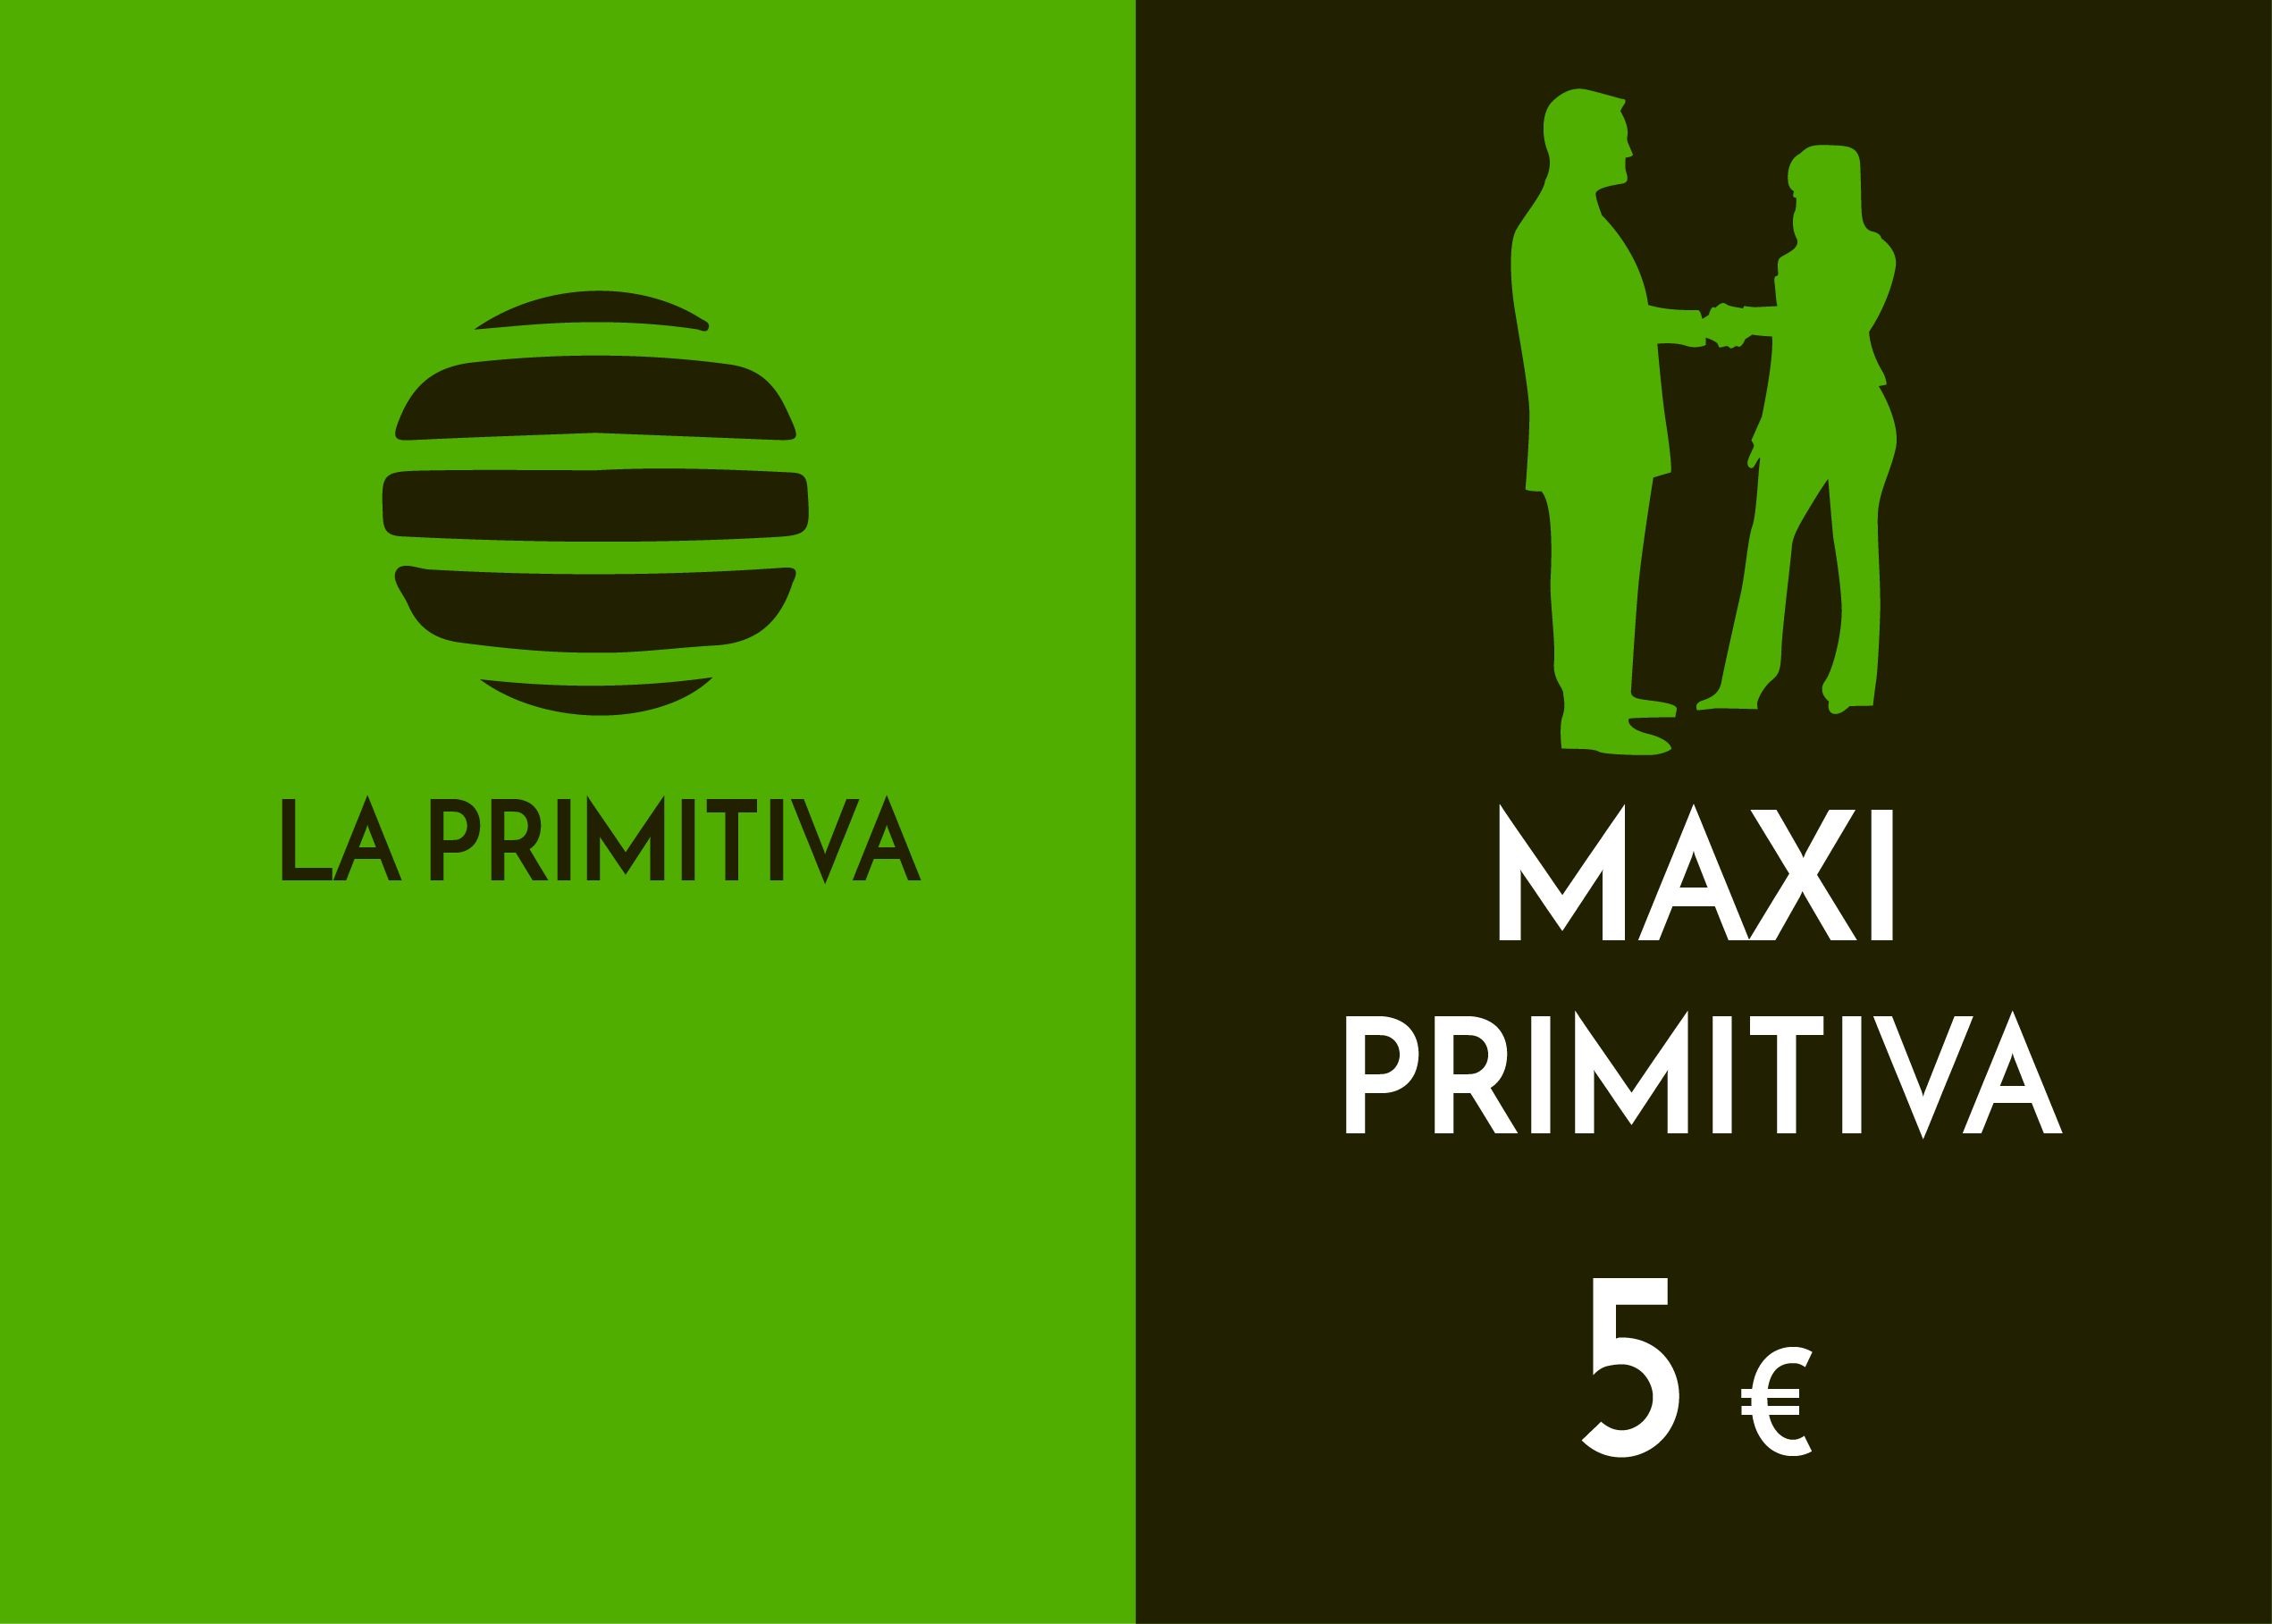 Play Group - maxiprimitiva - 5,00 Euros